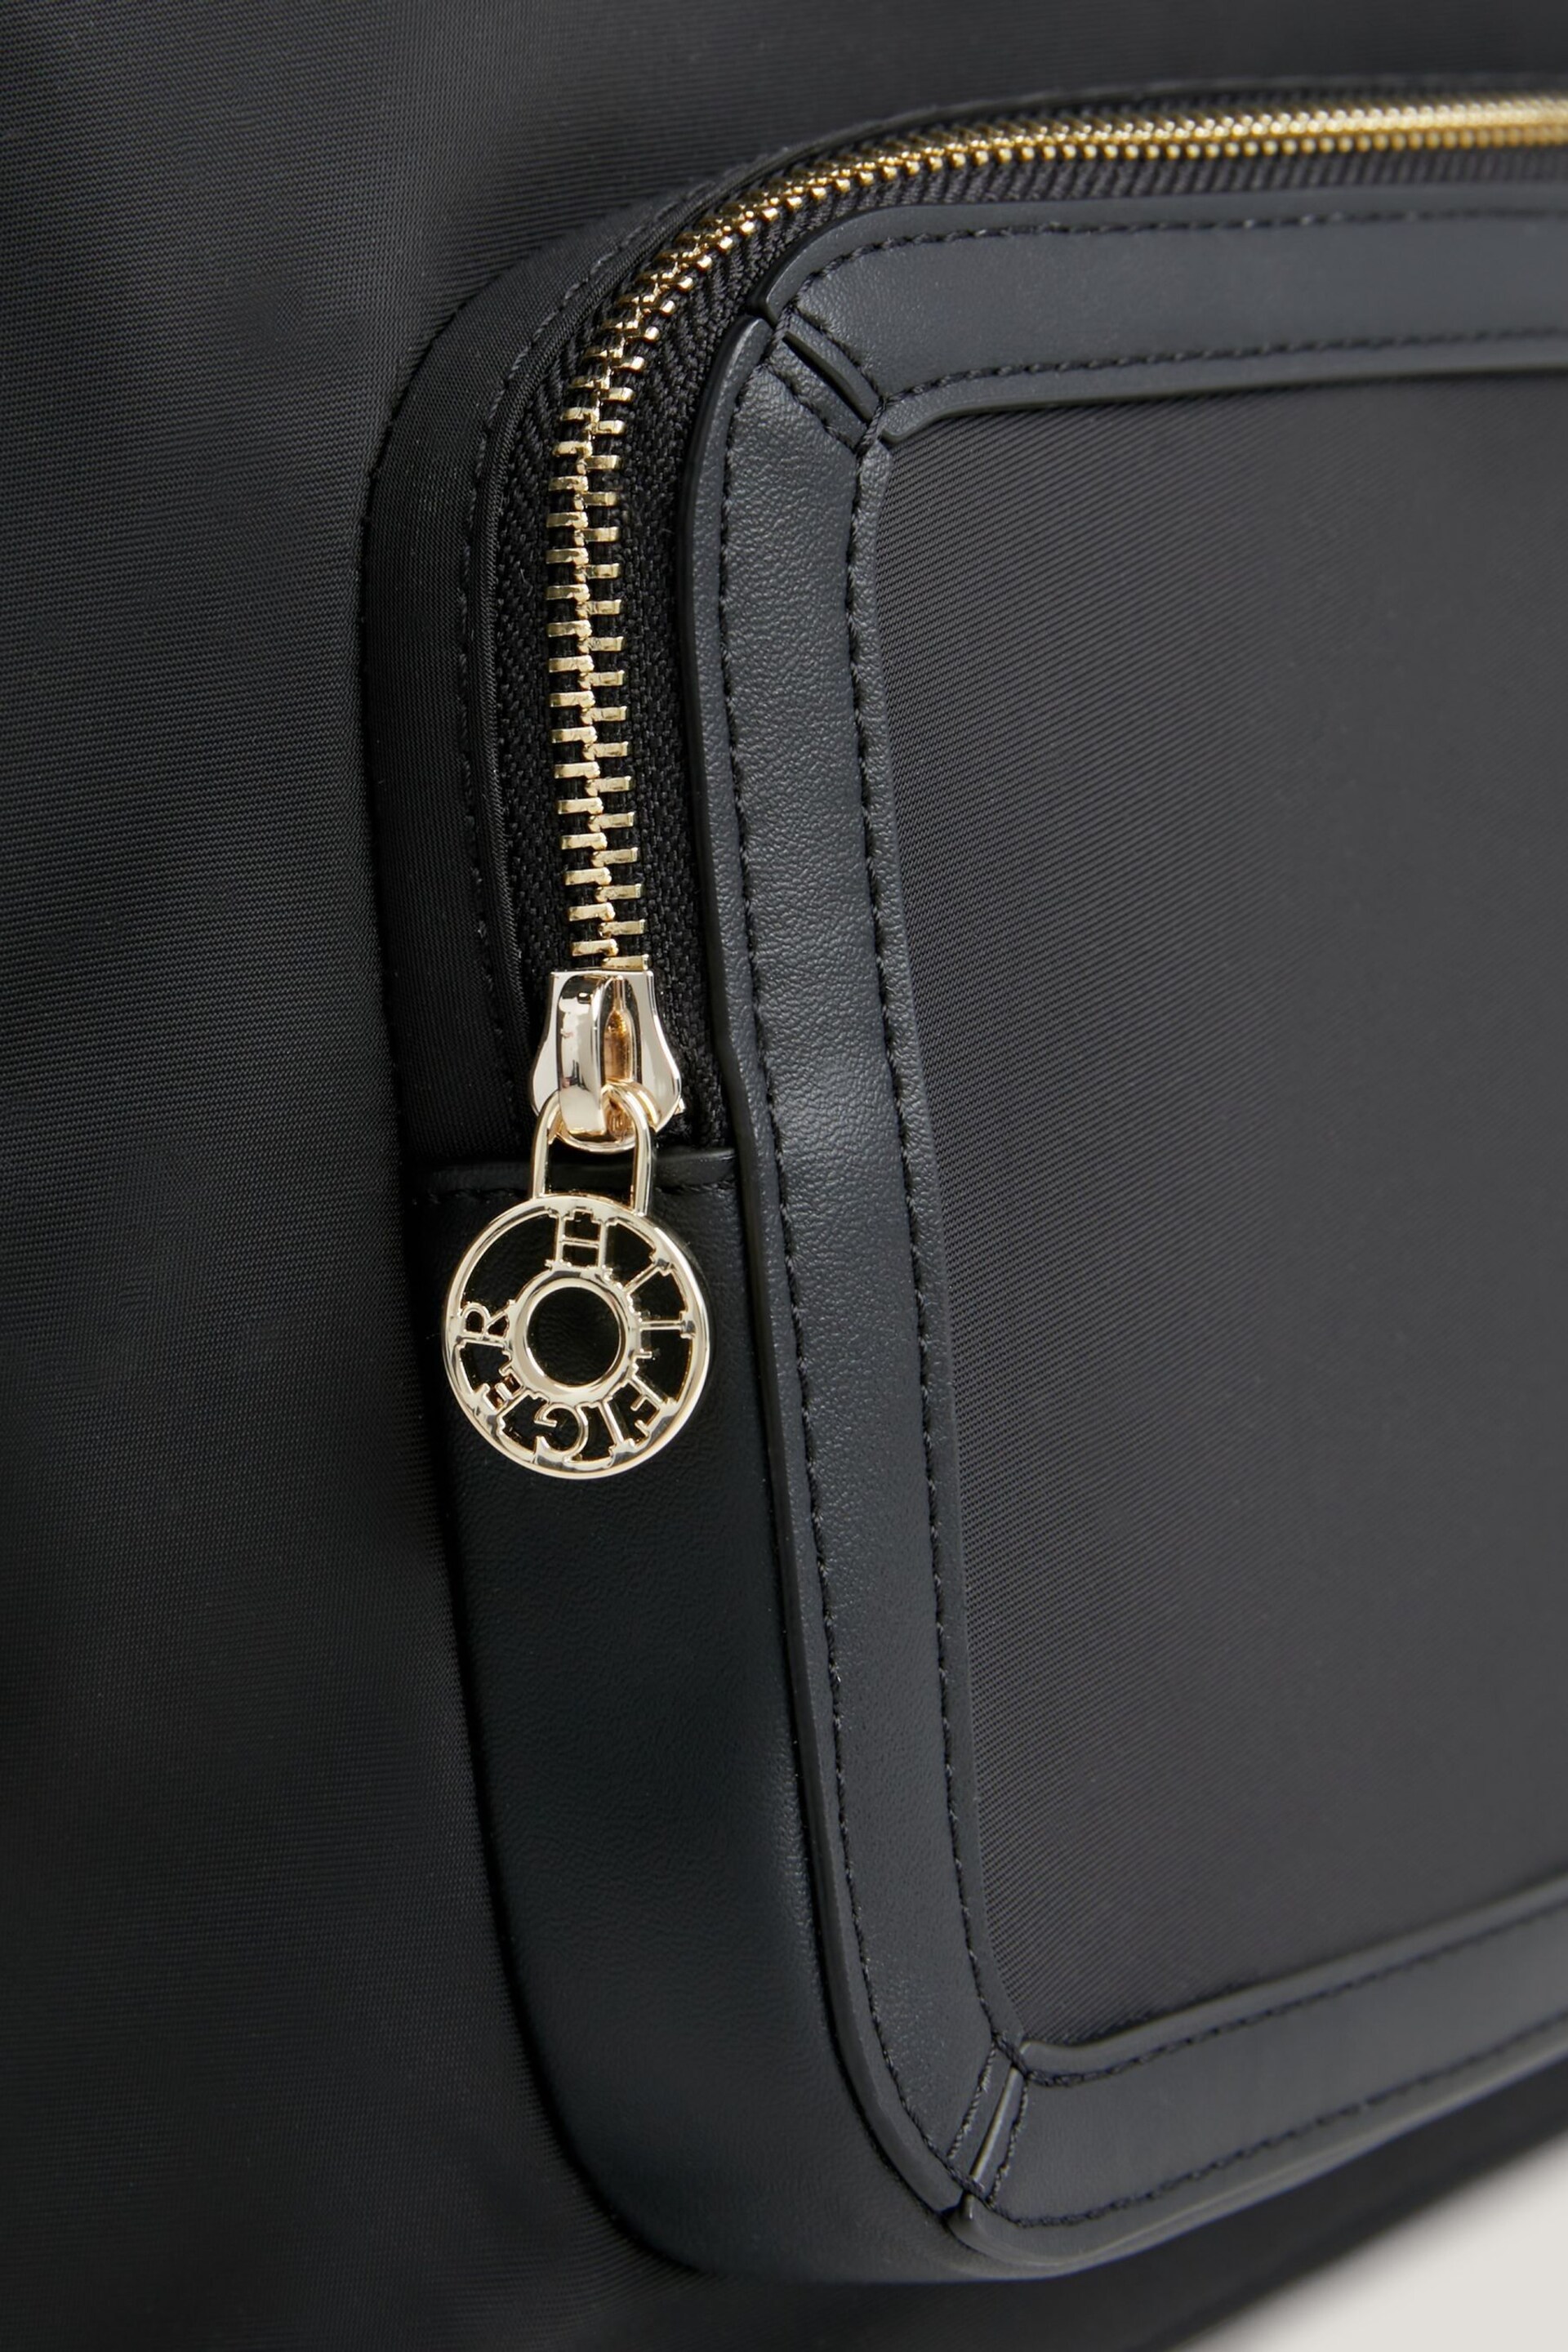 Tommy Hilfiger Essential Black Backpack - Image 6 of 6